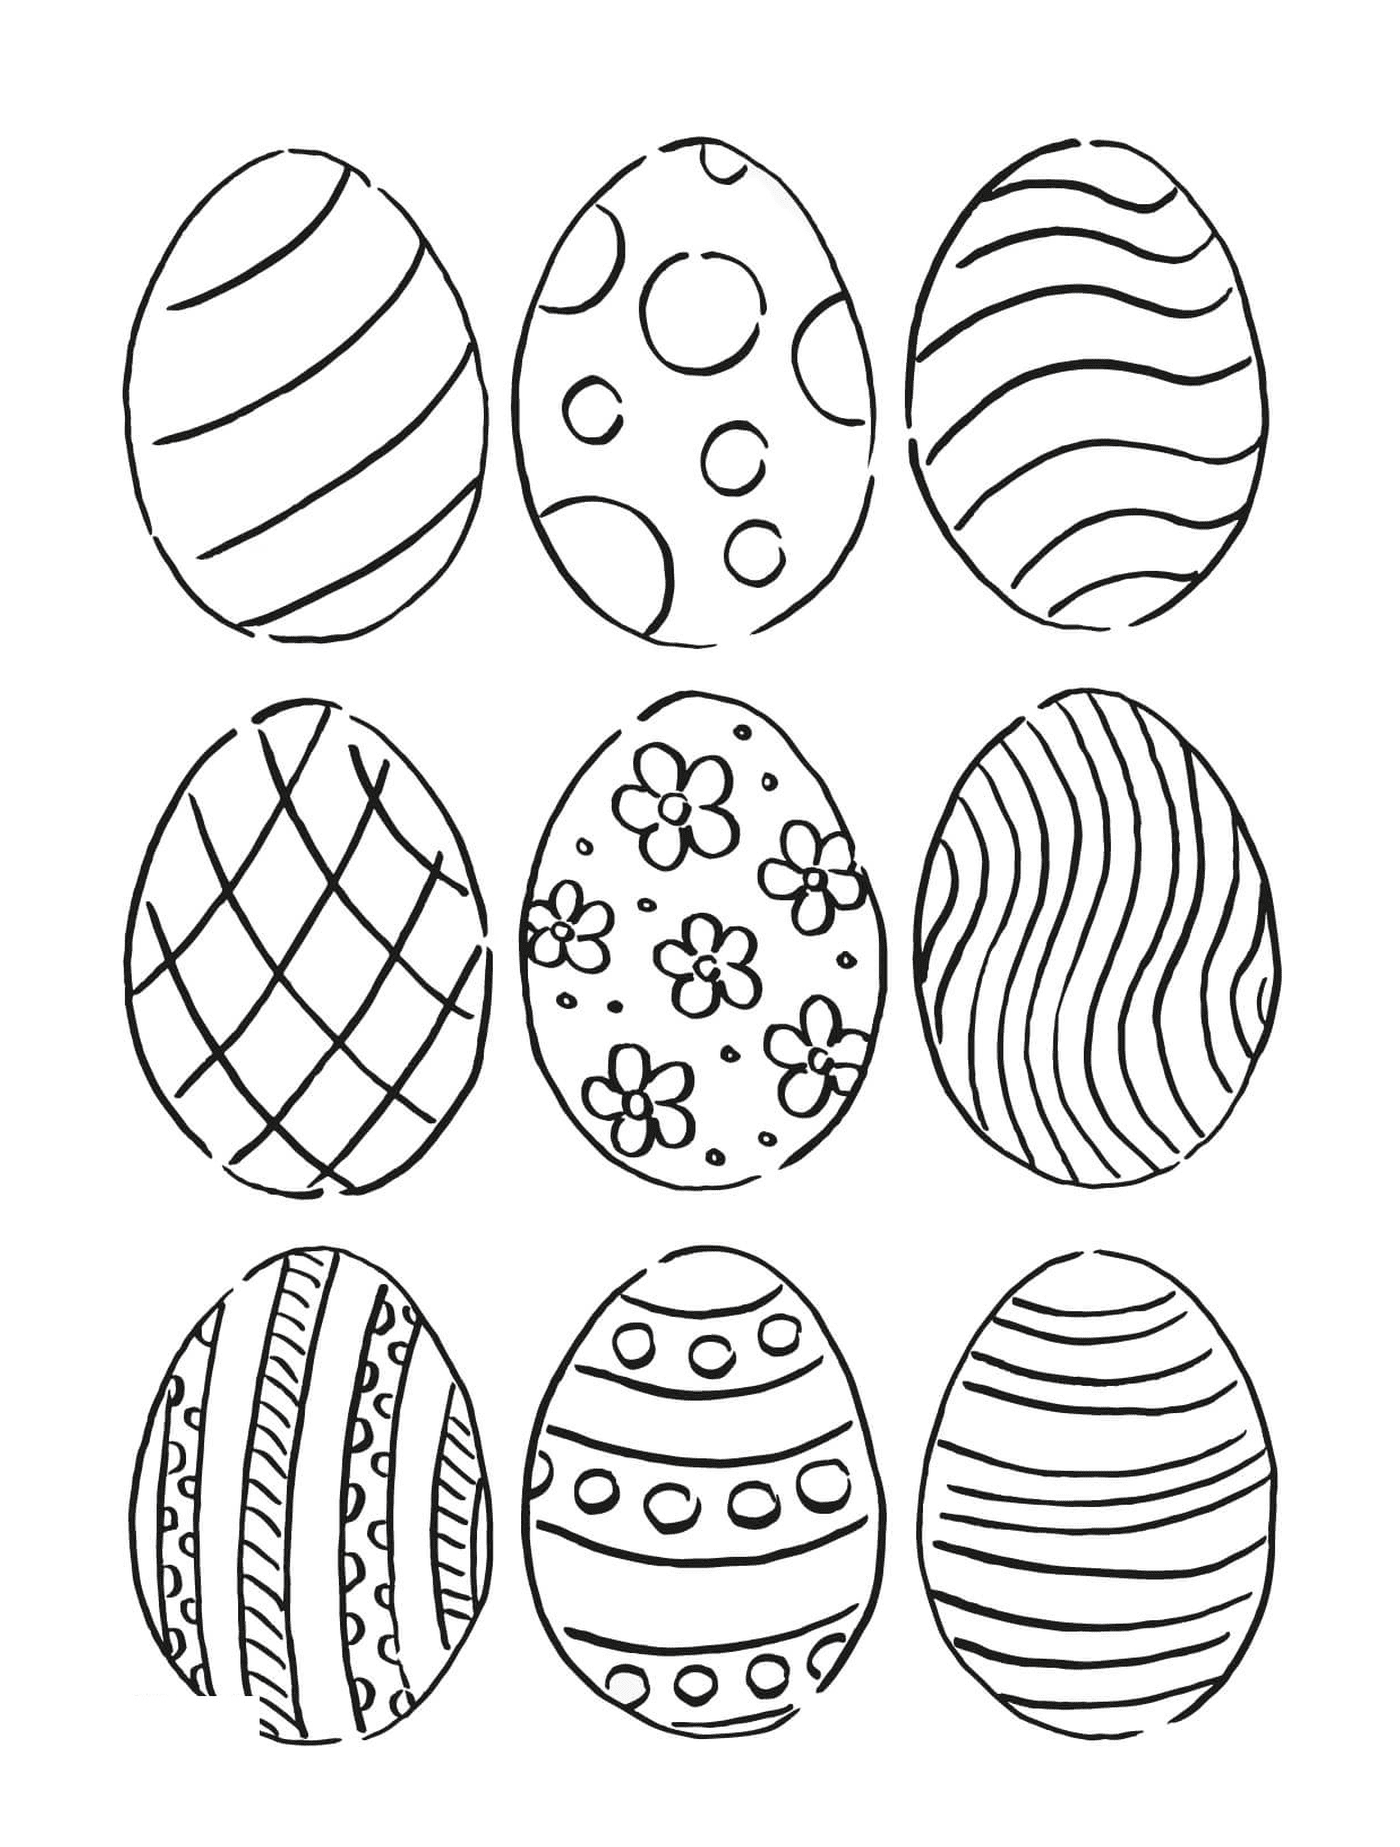  Conjunto de nove ovos com padrões diferentes 